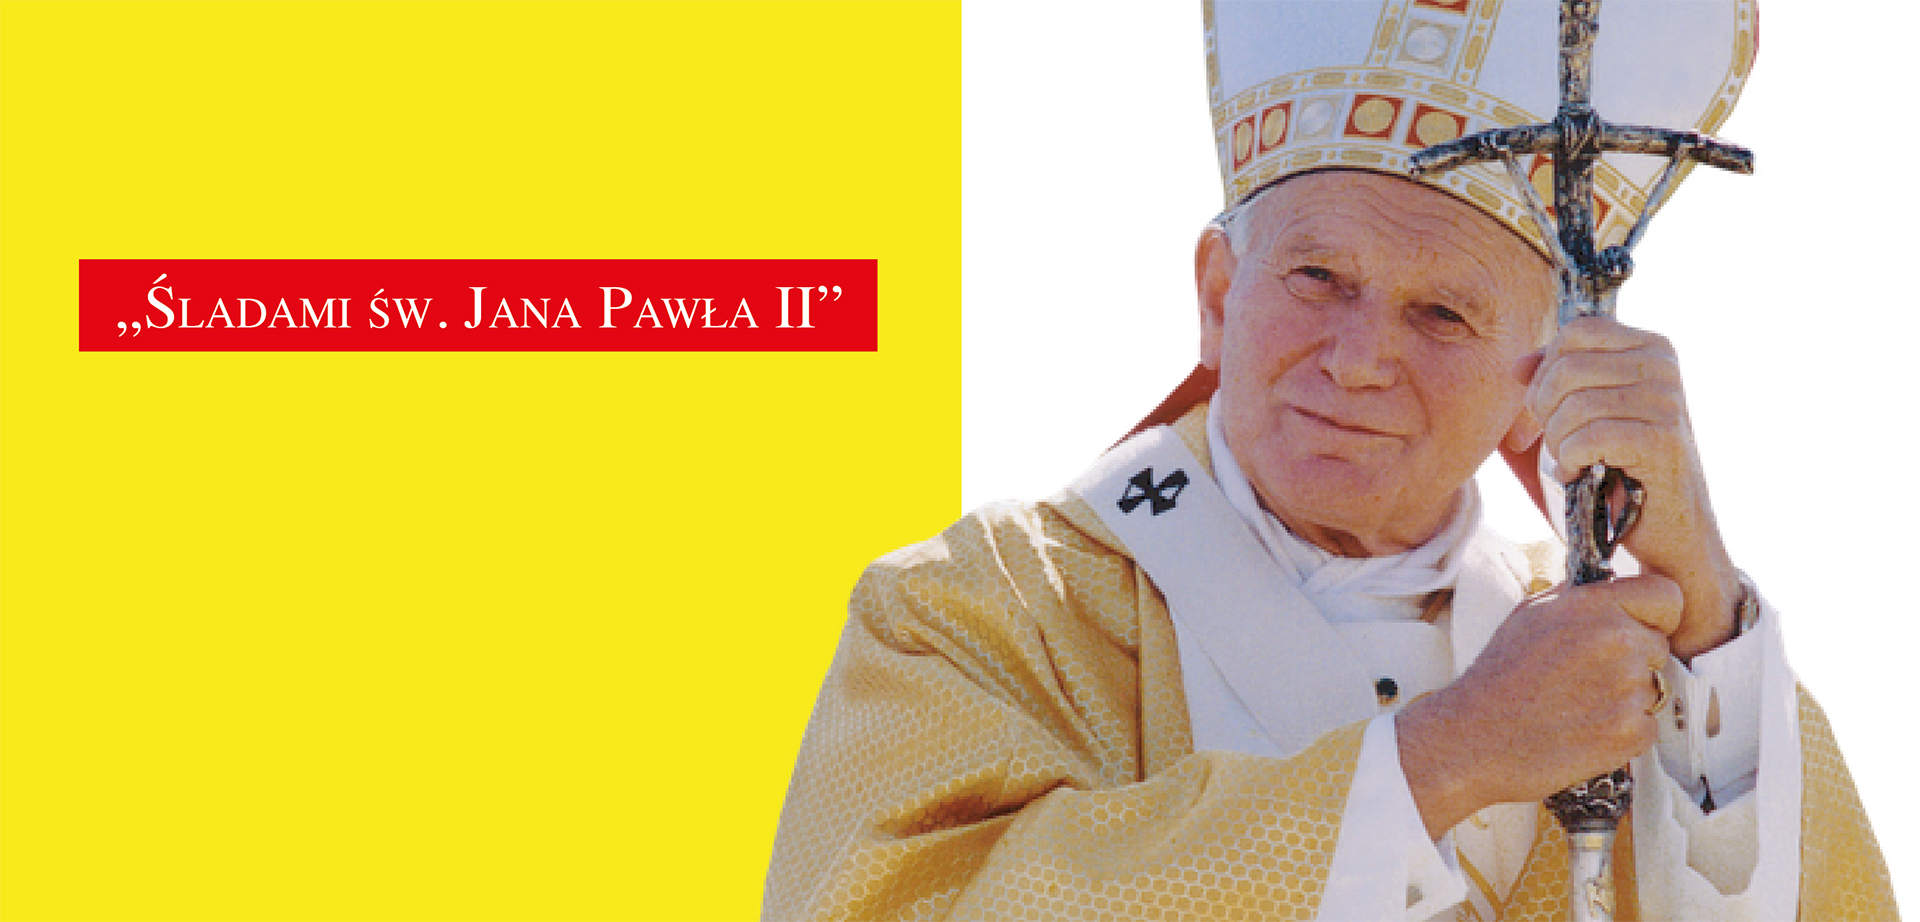 Śladami św. Jana Pawła II